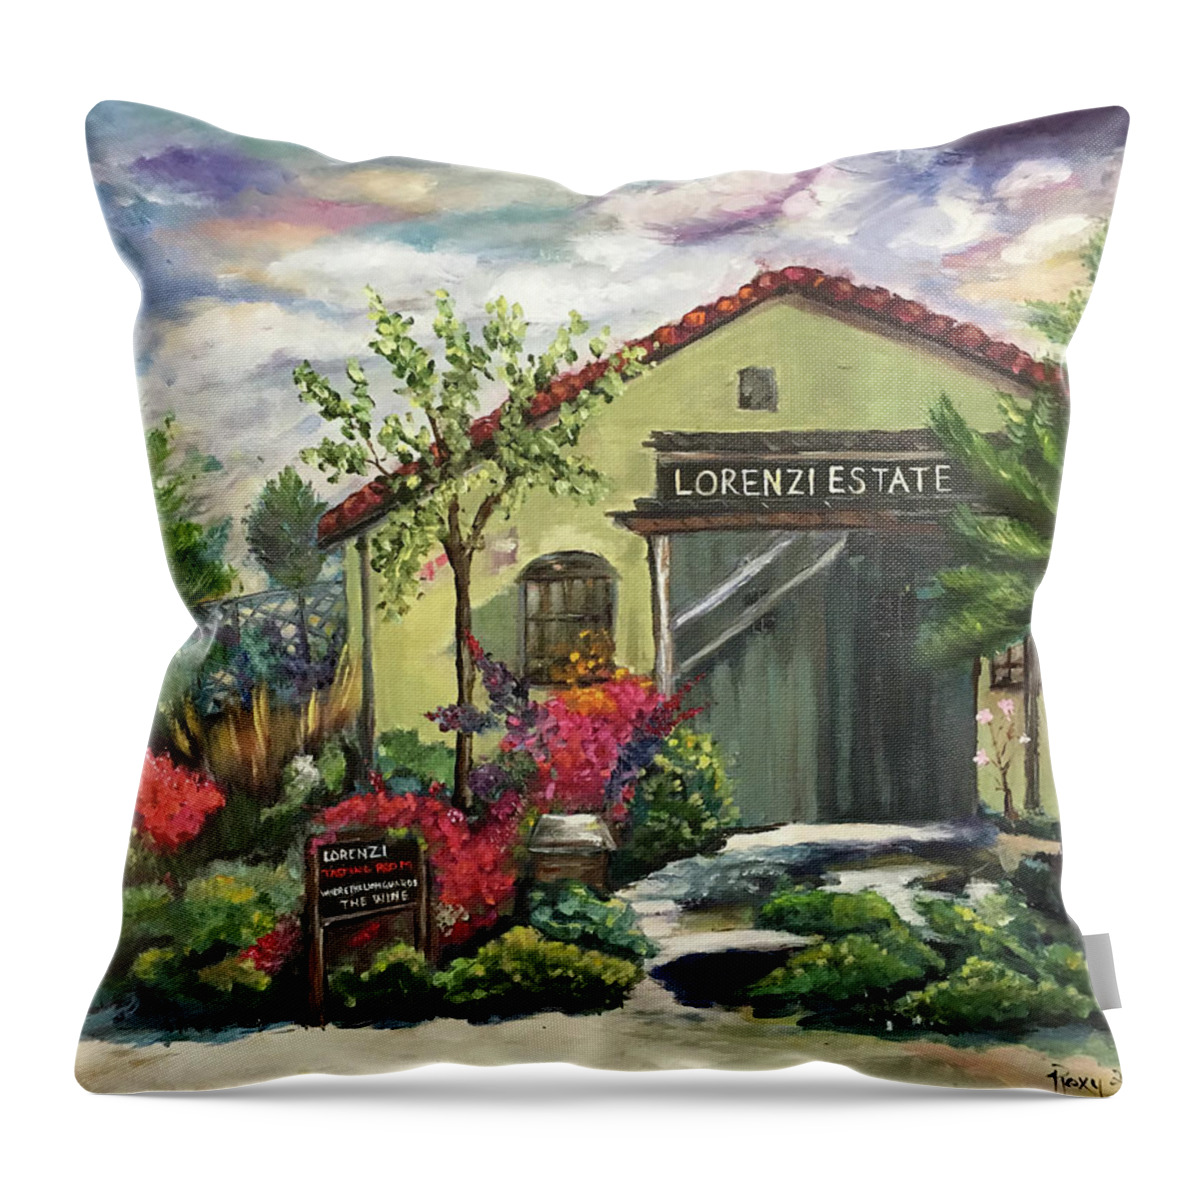 Lorenzi Throw Pillow featuring the painting Lorenzi Estate Winery by Roxy Rich